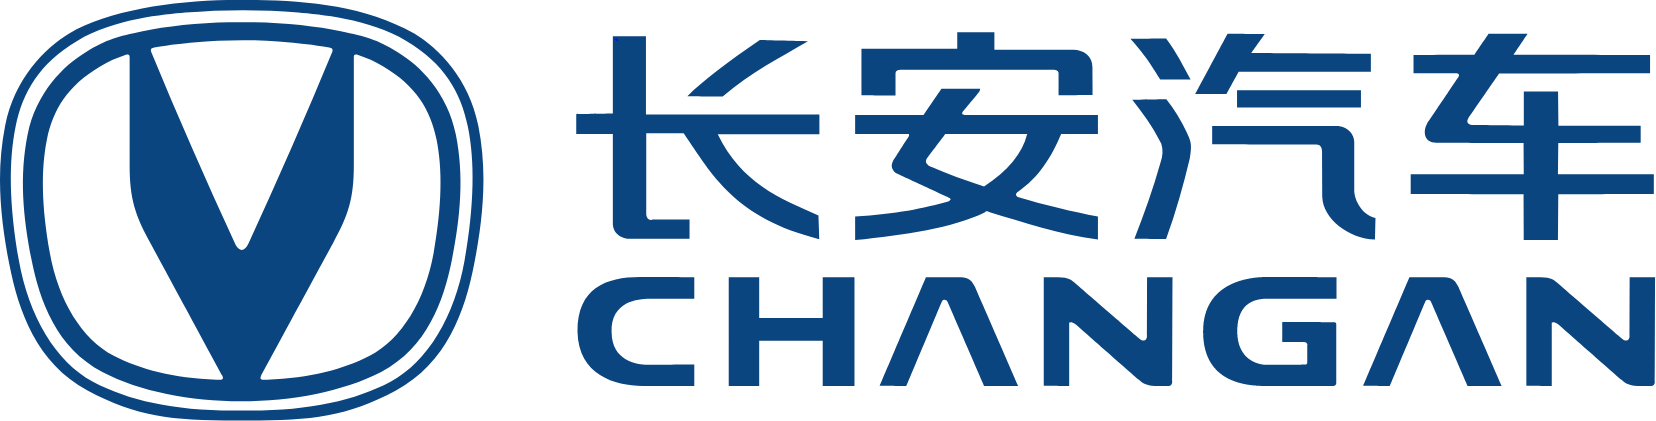 Chongqing Changan logo large (transparent PNG)